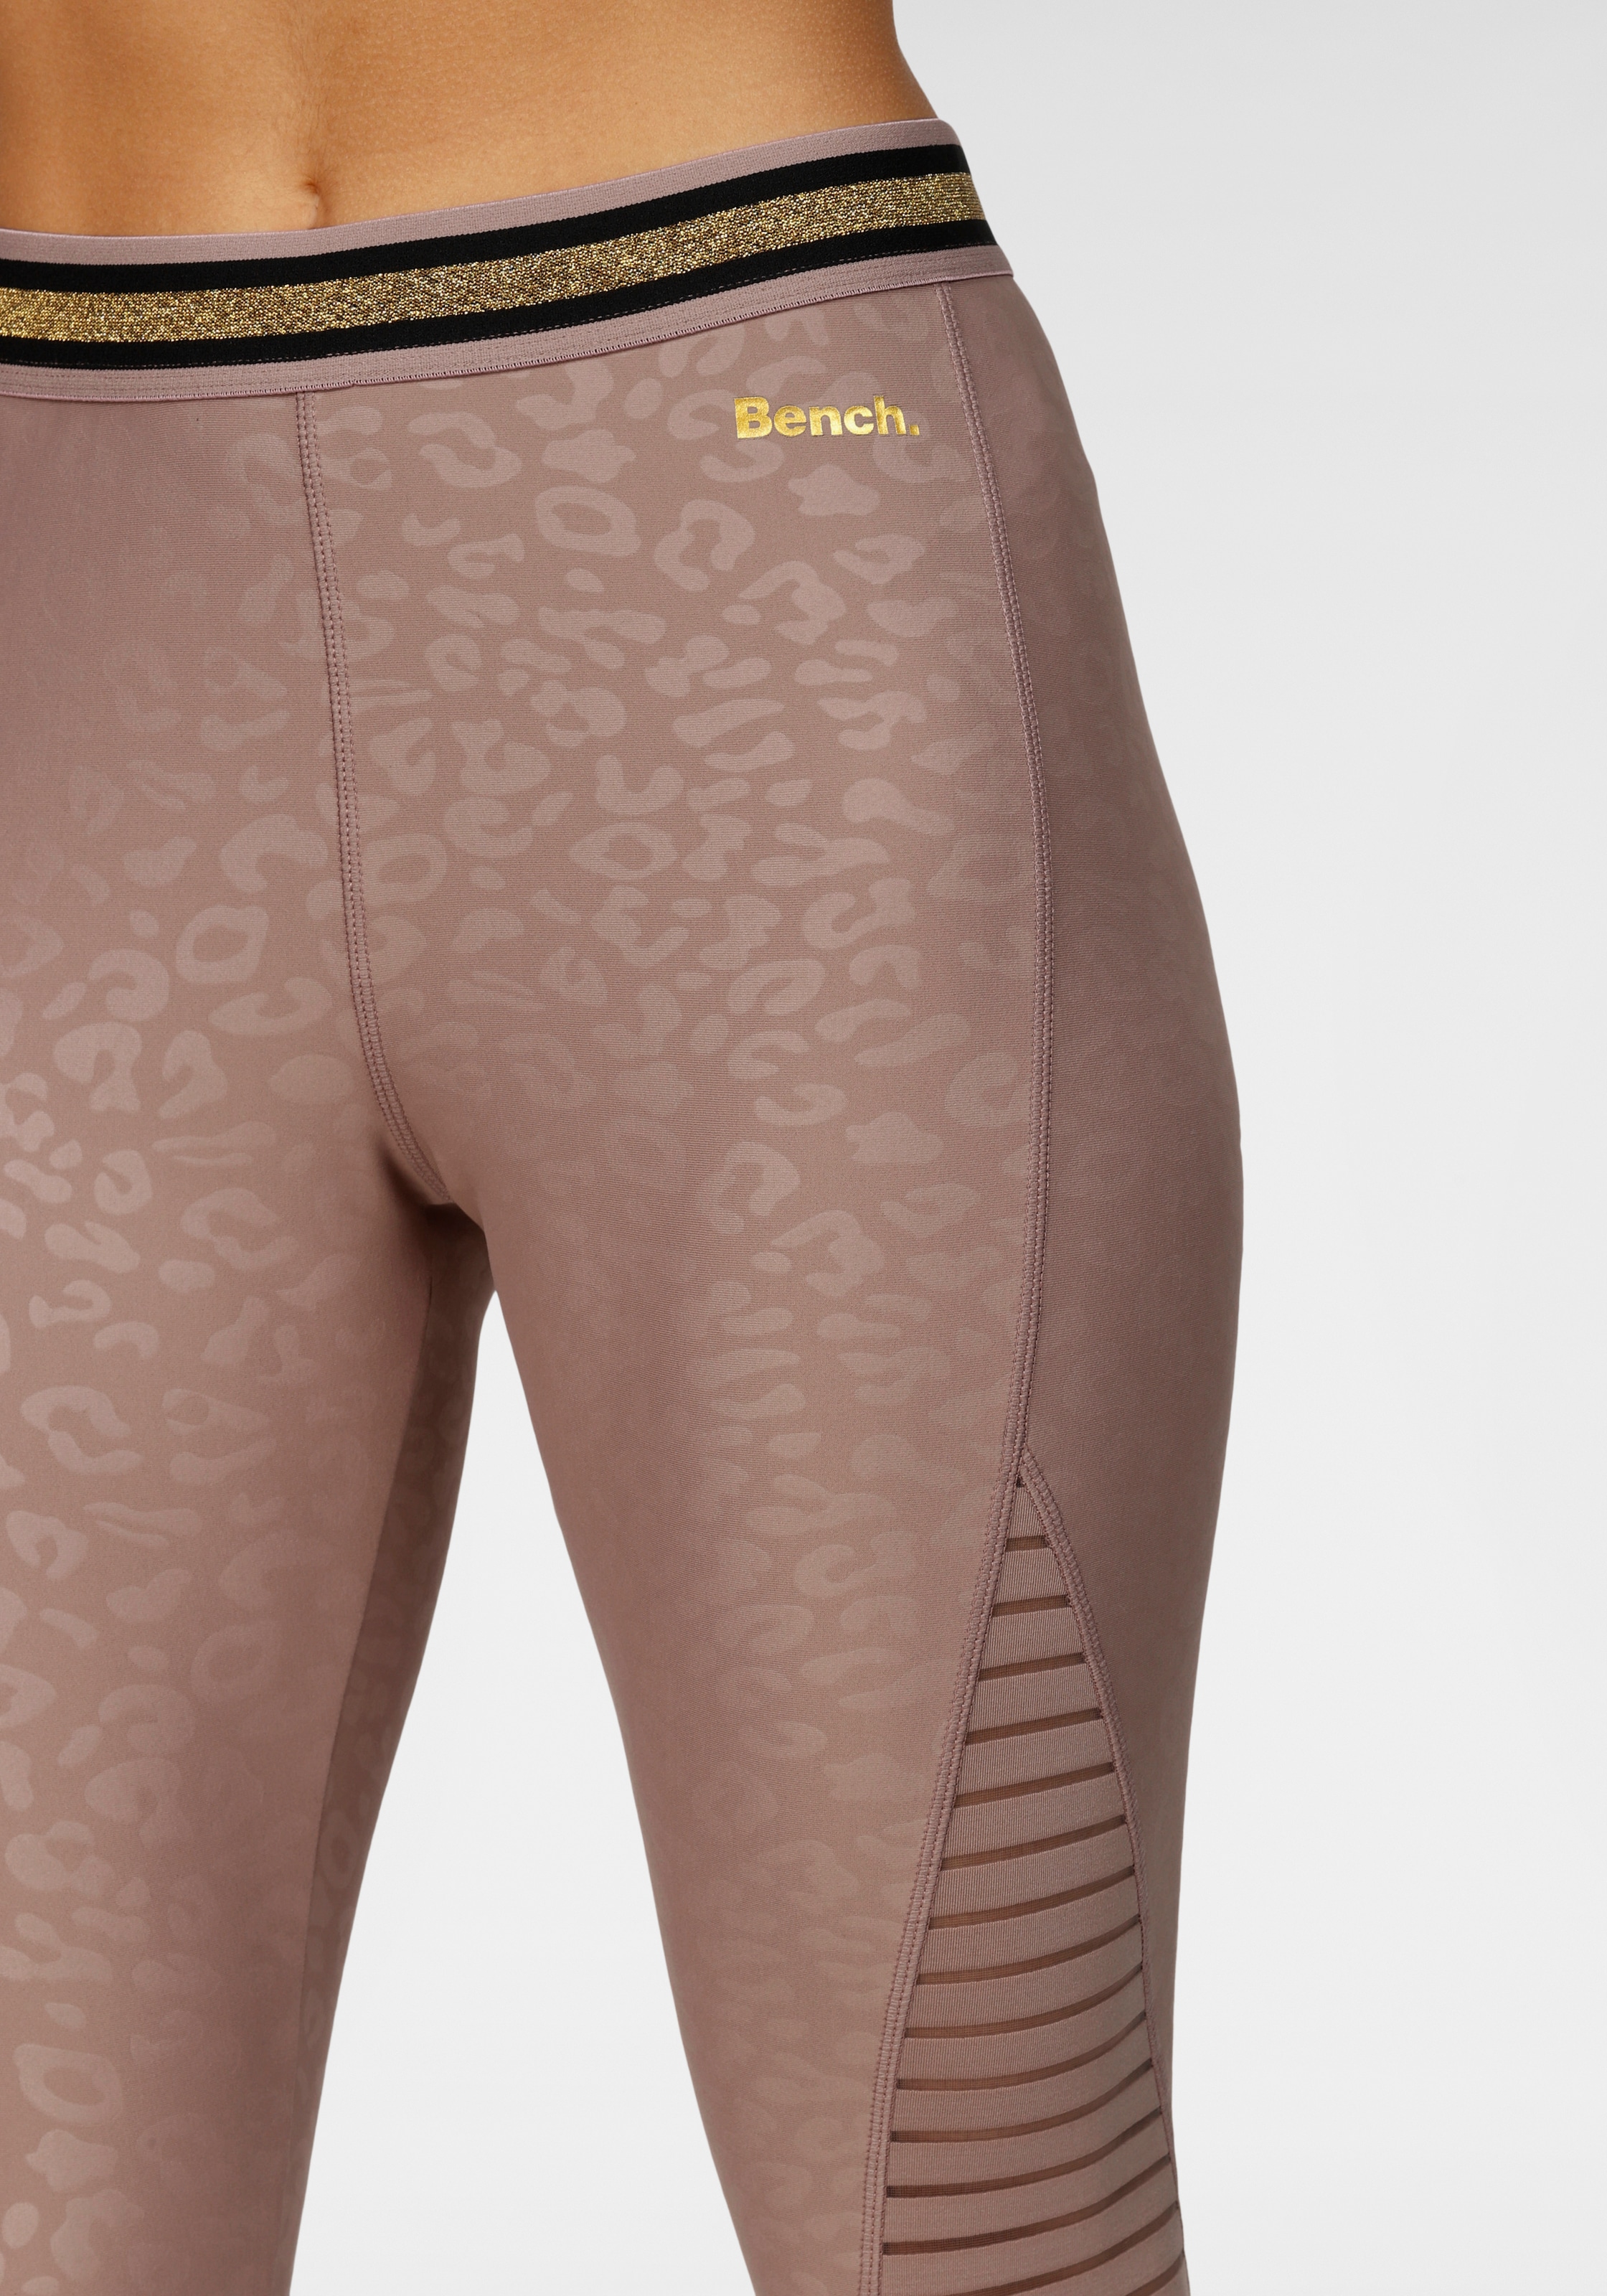 Bench. : leggings corsaire » sous-vêtements des Acheter de et des lingerie mode balnéaire, en LASCANA | ligne la